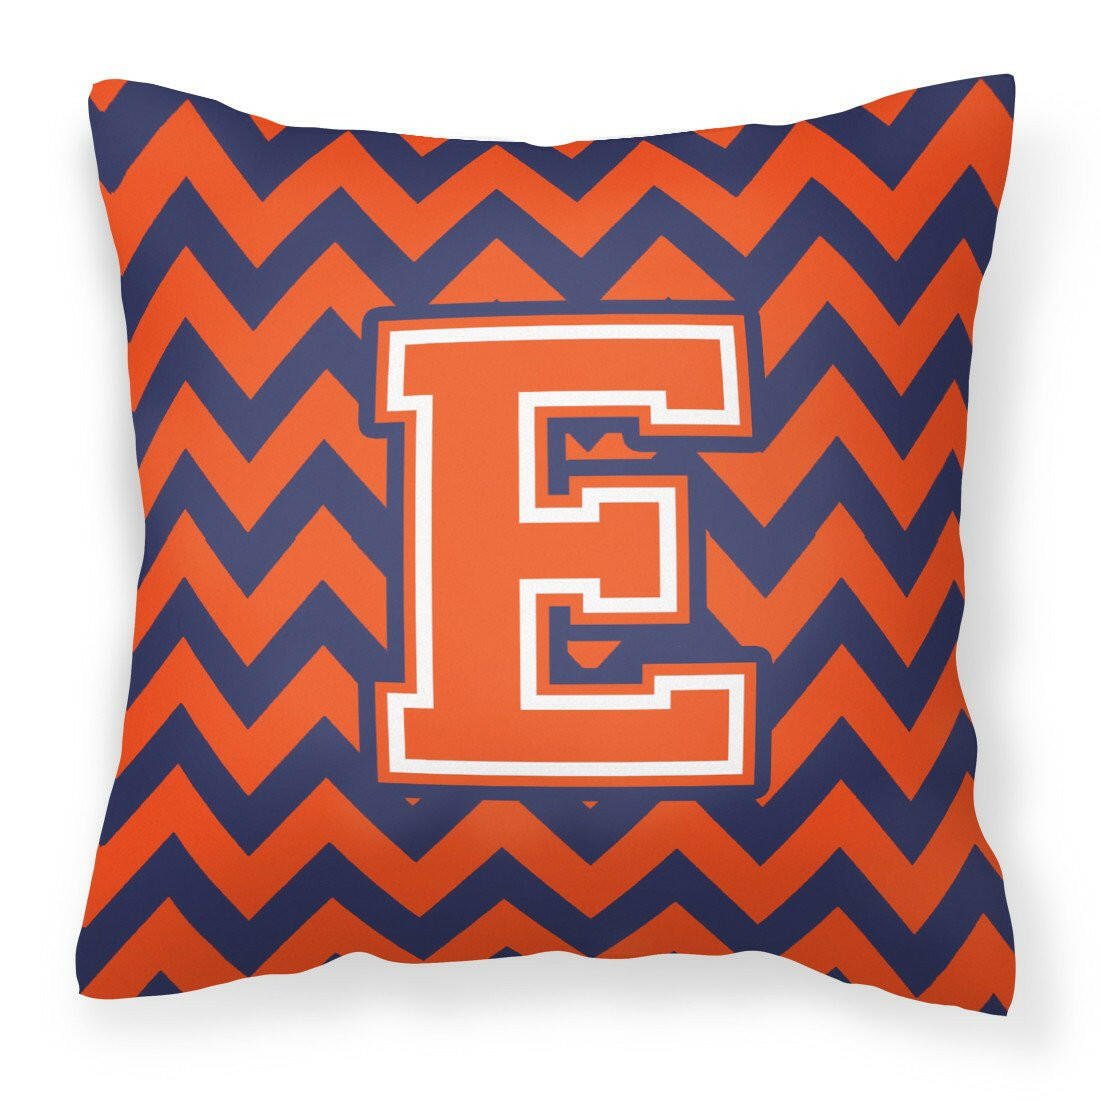 Letter E Chevron Orange and Blue Fabric Decorative Pillow CJ1042-EPW1414 - the-store.com